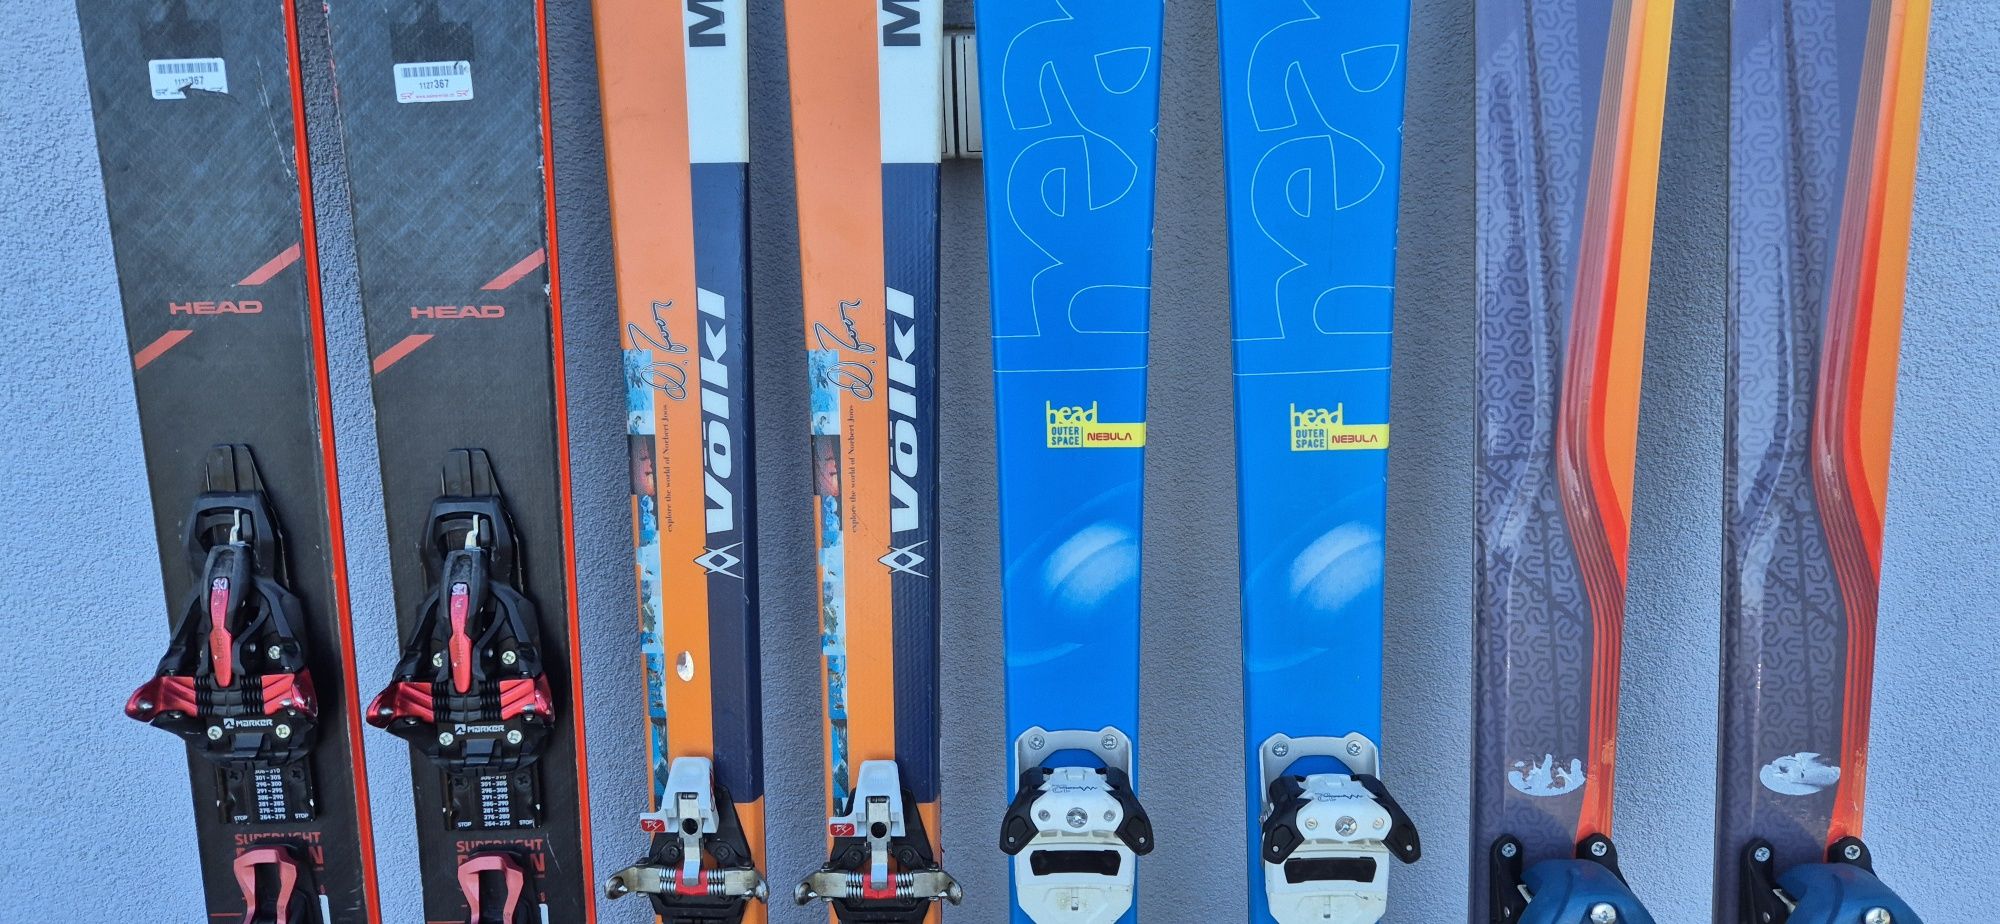 Narty skiturowe pinowe i szynowe pakiet nart